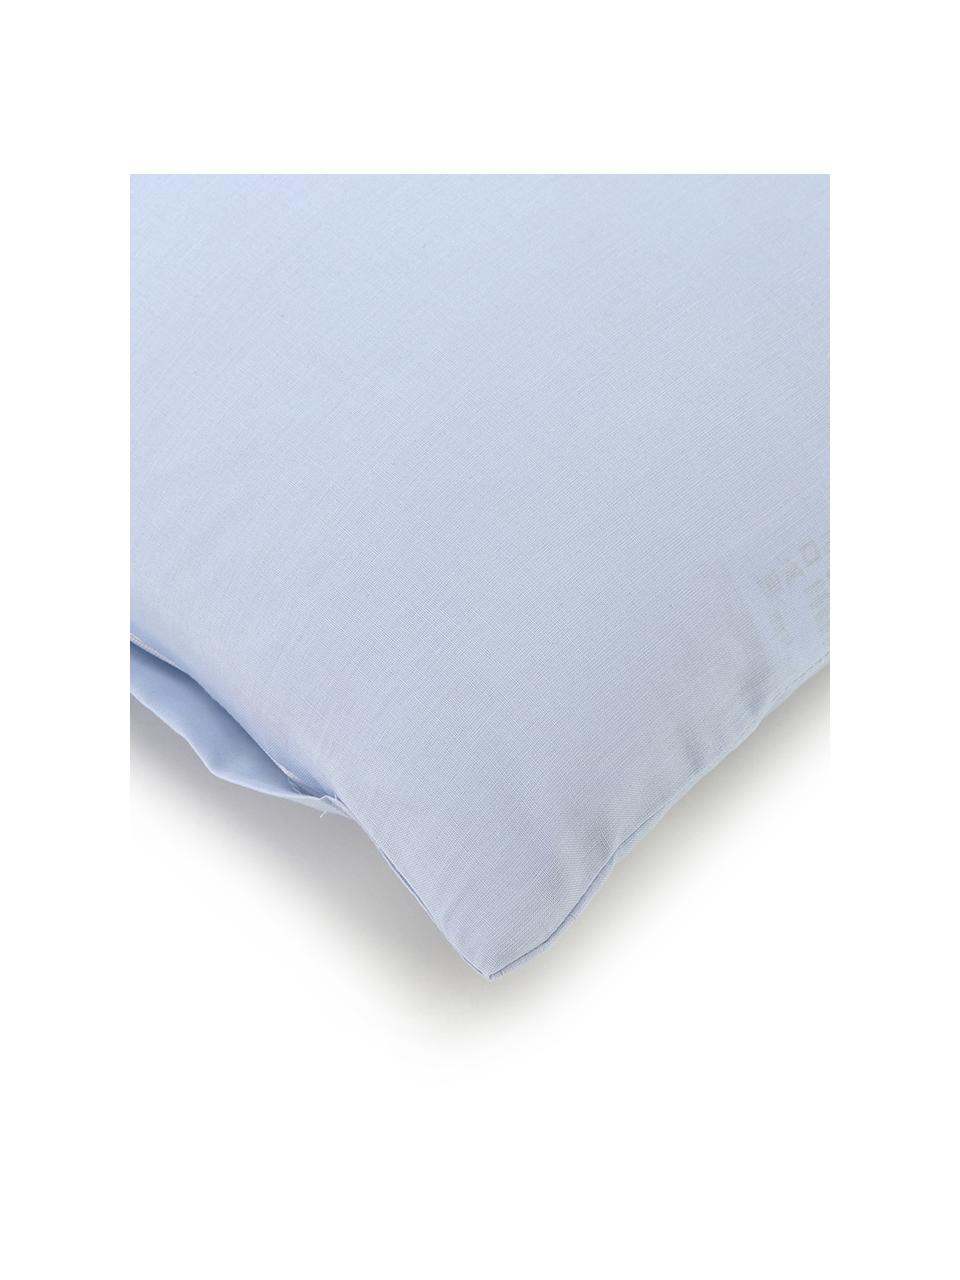 Bavlnená posteľná bielizeň Weekend, svetlomodrá, 100 % bavlna
Hustota vlákna 145 TC, kvalita štandard
Posteľná bielizeň z bavlny je príjemná na dotyk, dobre absorbuje vlhkosť a je vhodná pre alergikov, Svetlomodrá, 135 x 200 cm + 1 vankúš 80 x 80 cm